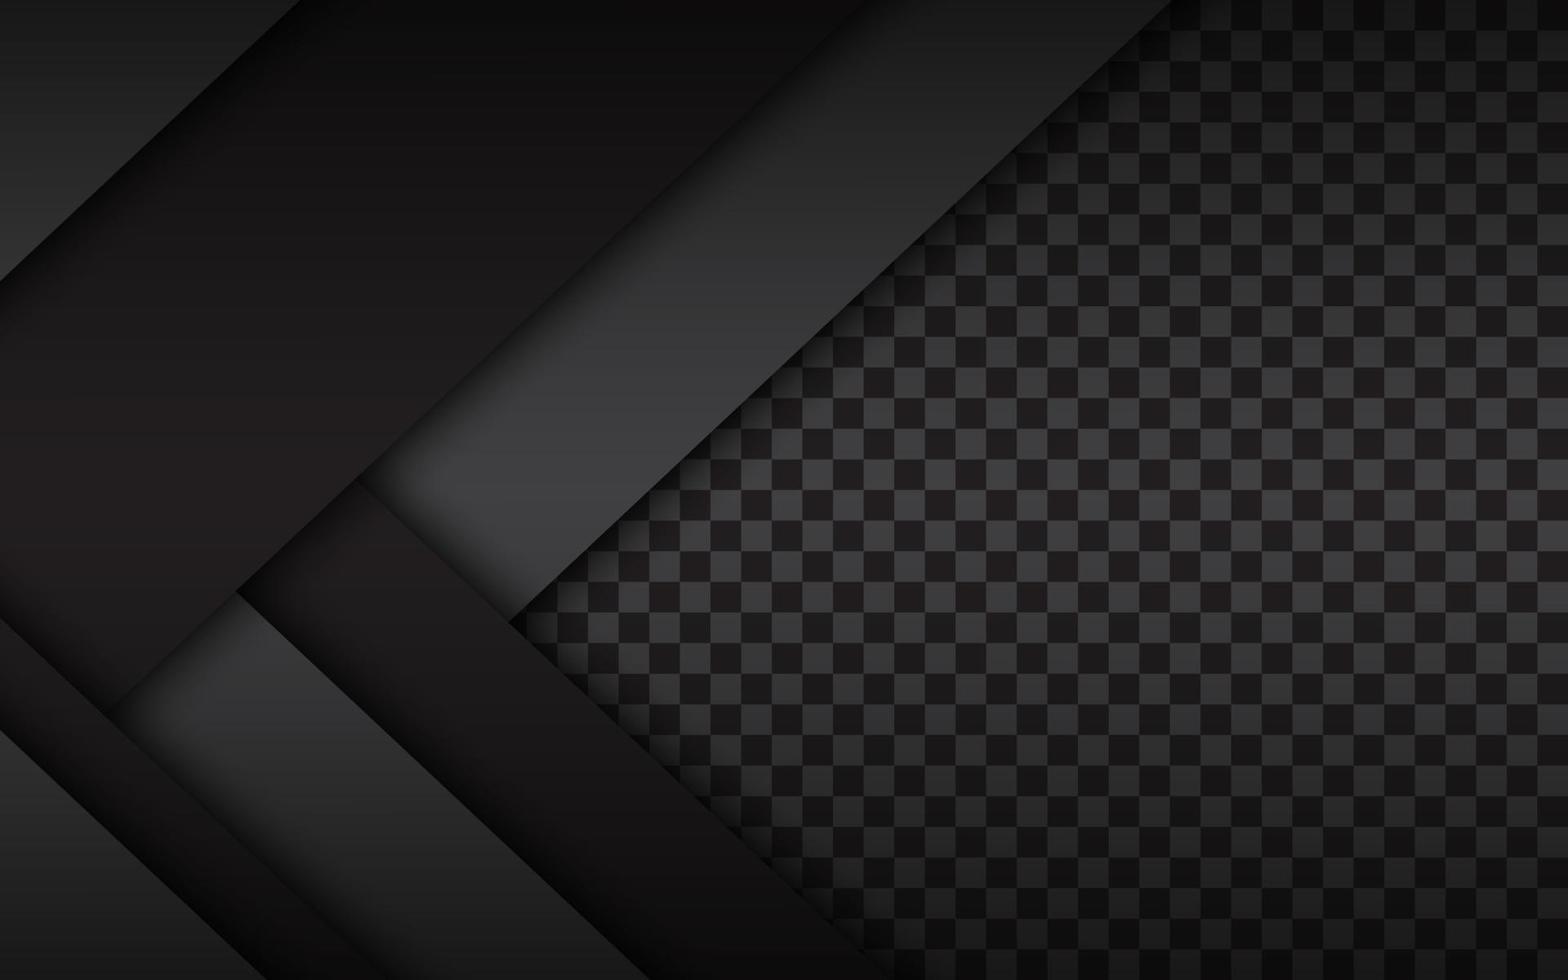 zwart-witte lagen boven elkaar, modern materiaalontwerp met een zeshoekig patroon, bedrijfssjabloon voor uw bedrijf, vector abstracte breedbeeldachtergrond